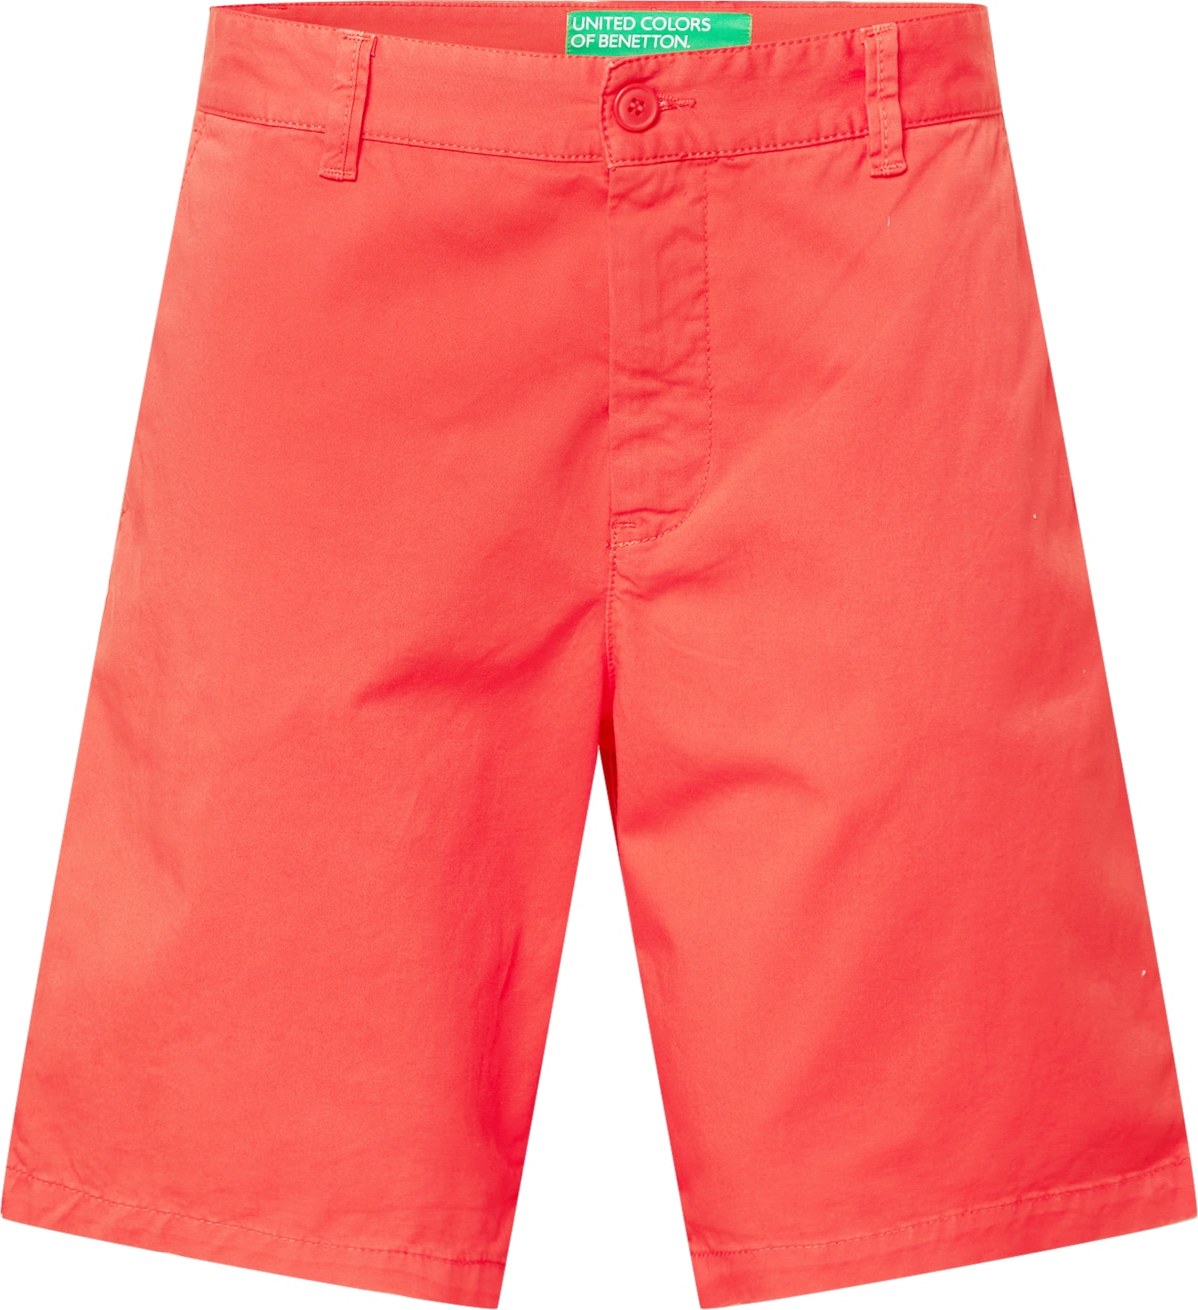 UNITED COLORS OF BENETTON Chino kalhoty oranžově červená